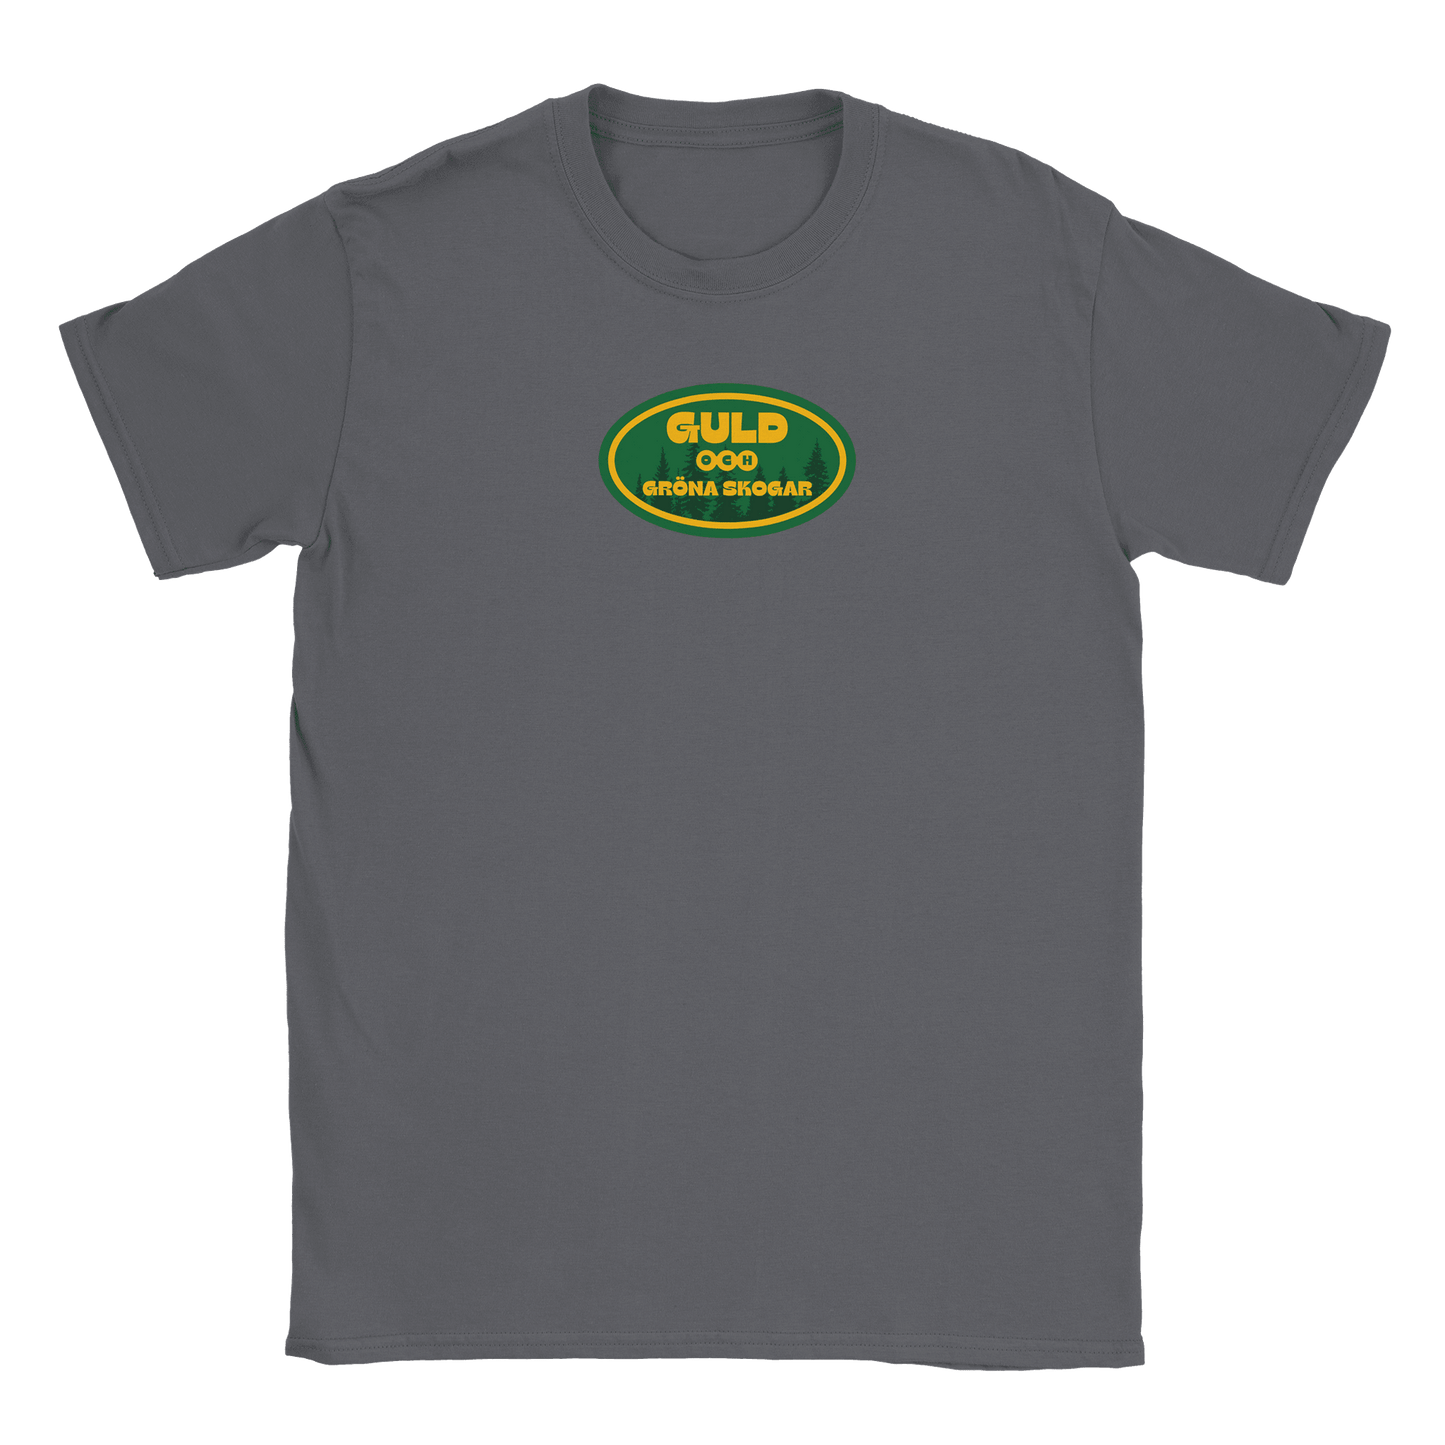 Guld och gröna skogar - T-shirt Kolgrå